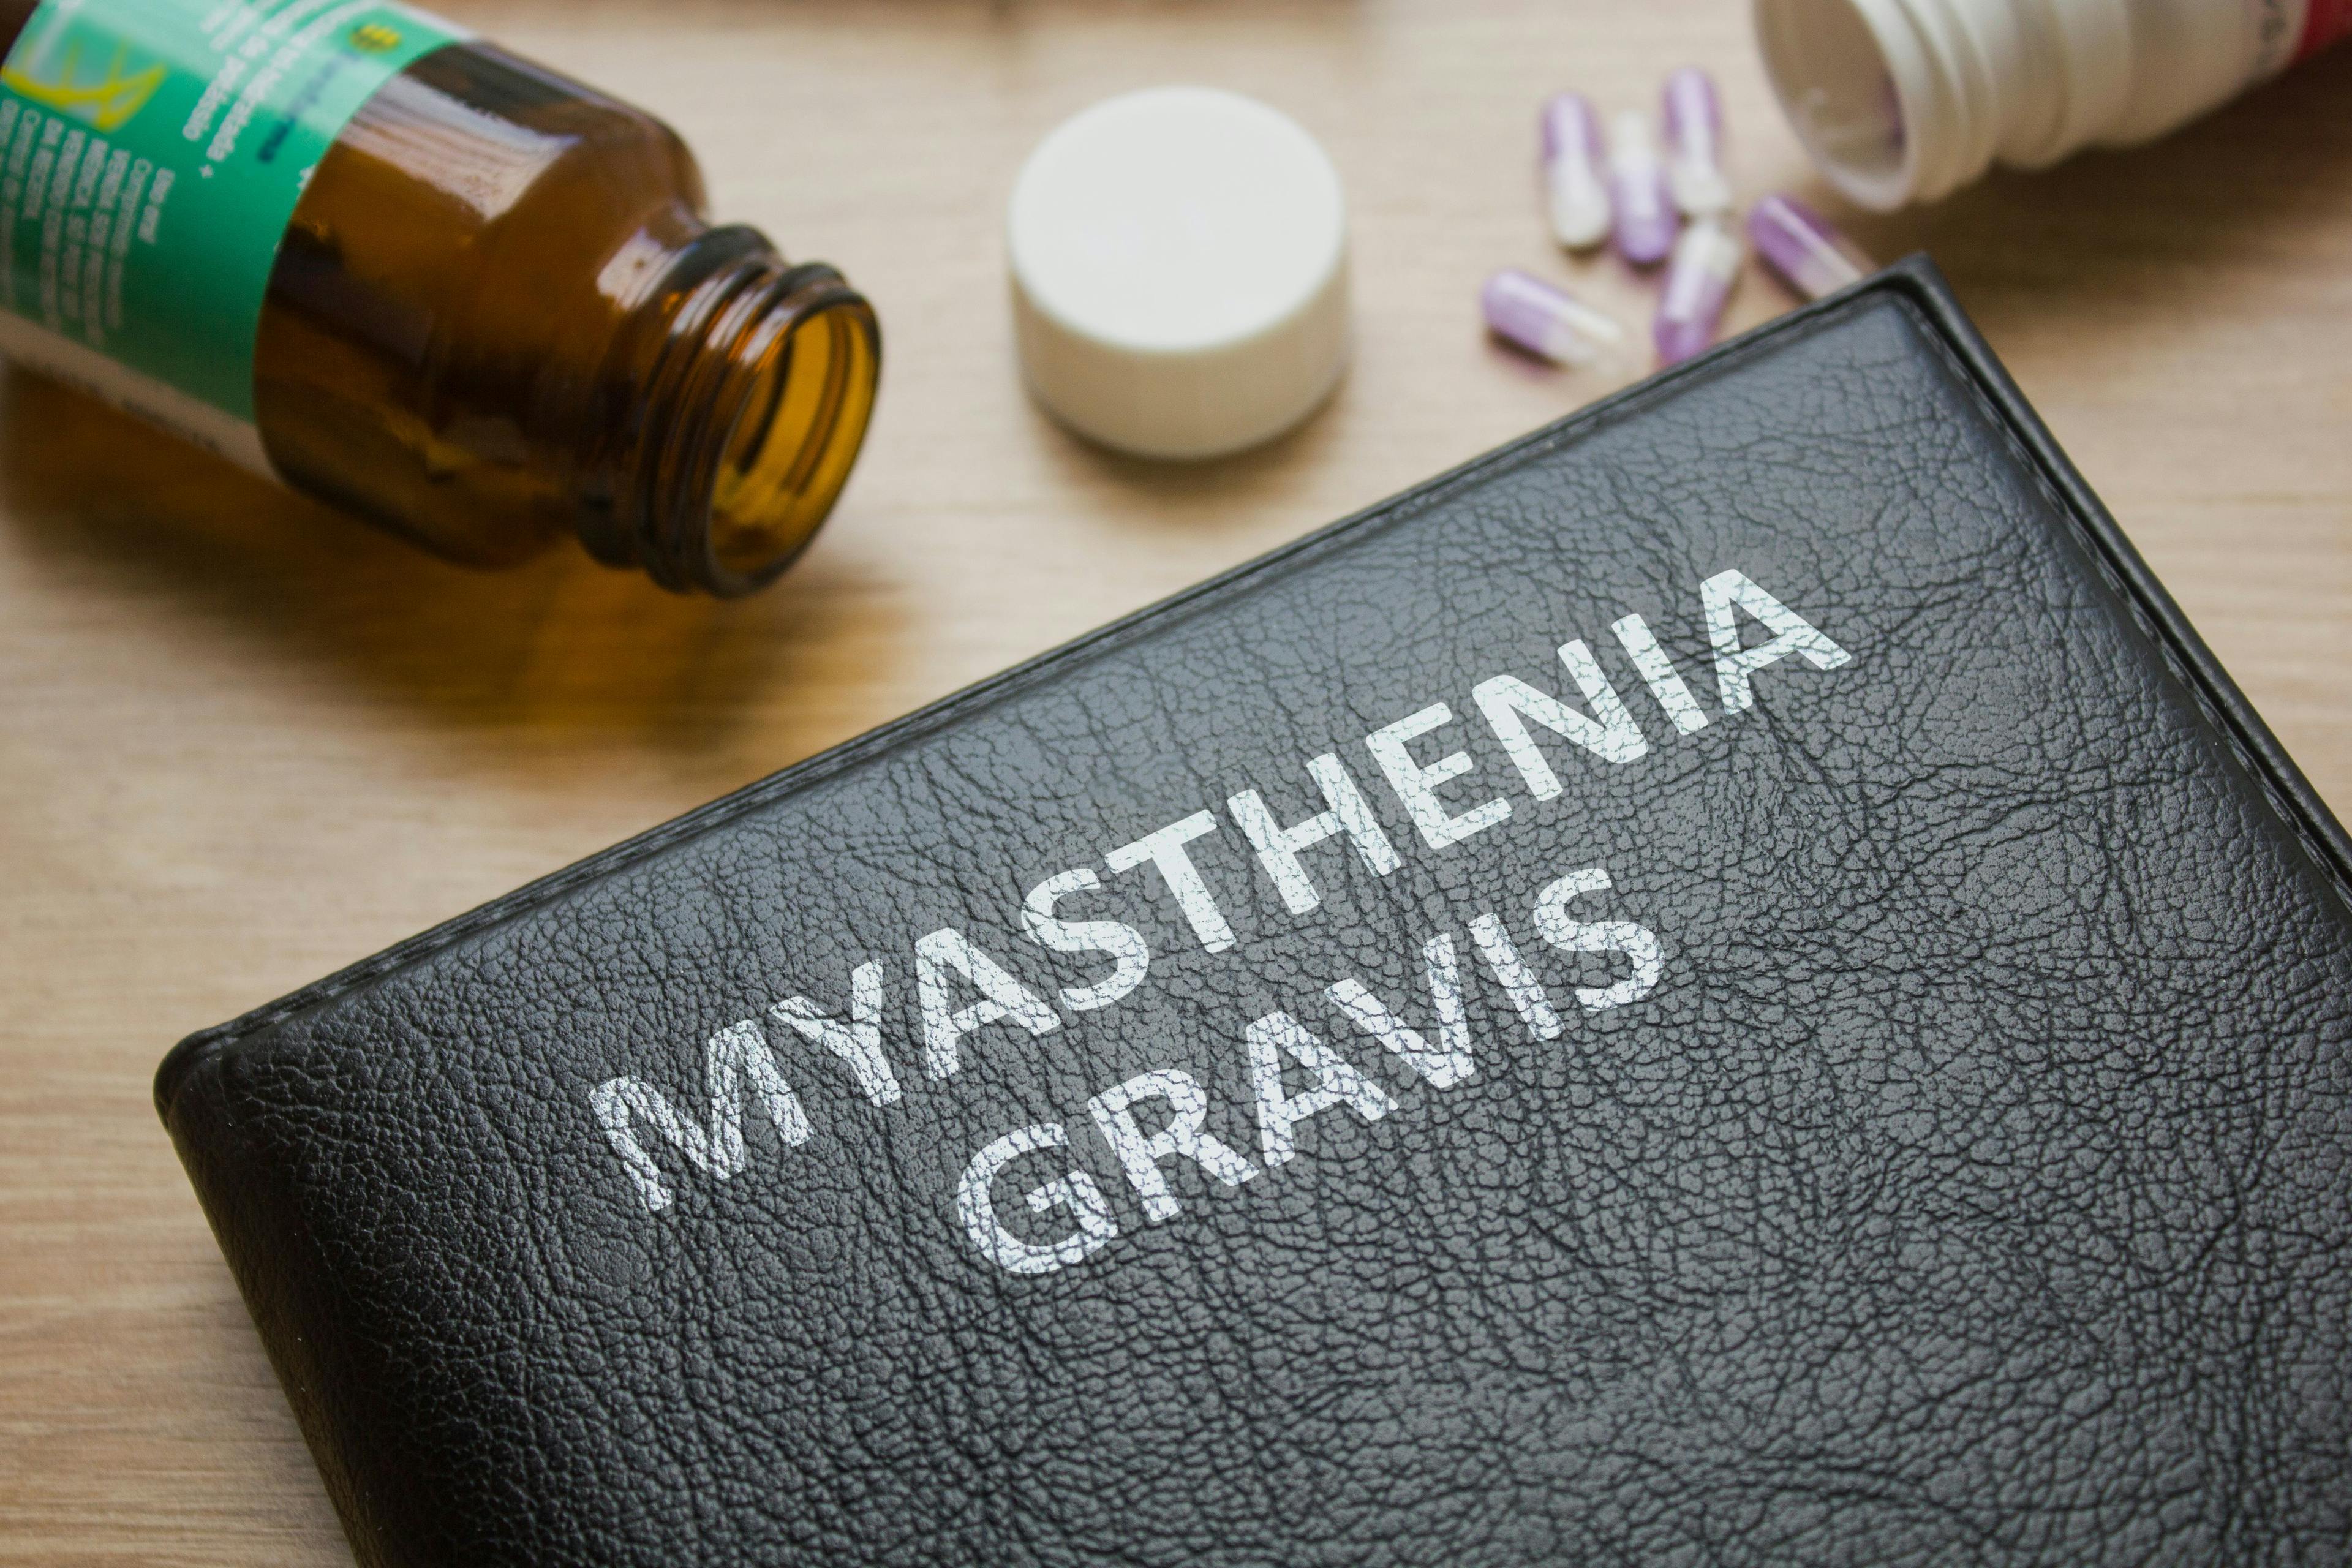 Myasthenia gravis report | Image credit: mdaros - stock.adobe.com